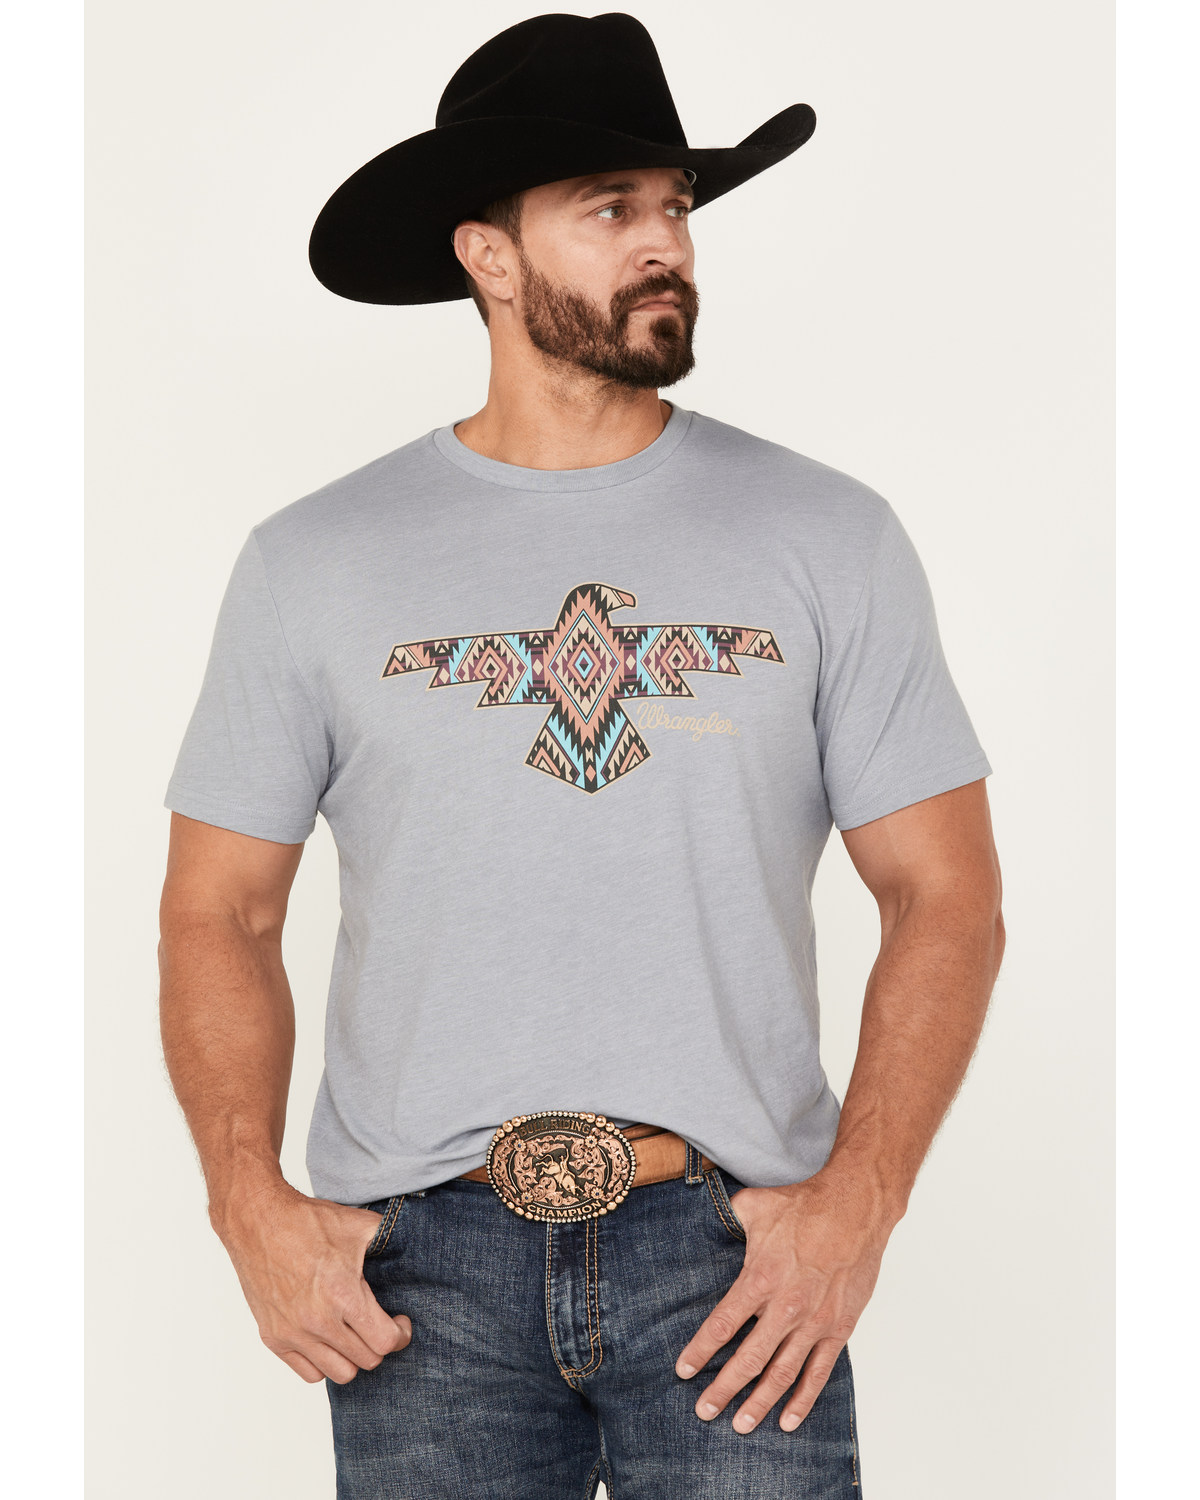 Wrangler Men's Southwestern Print Eagle Short Sleeve Graphic T-Shirt